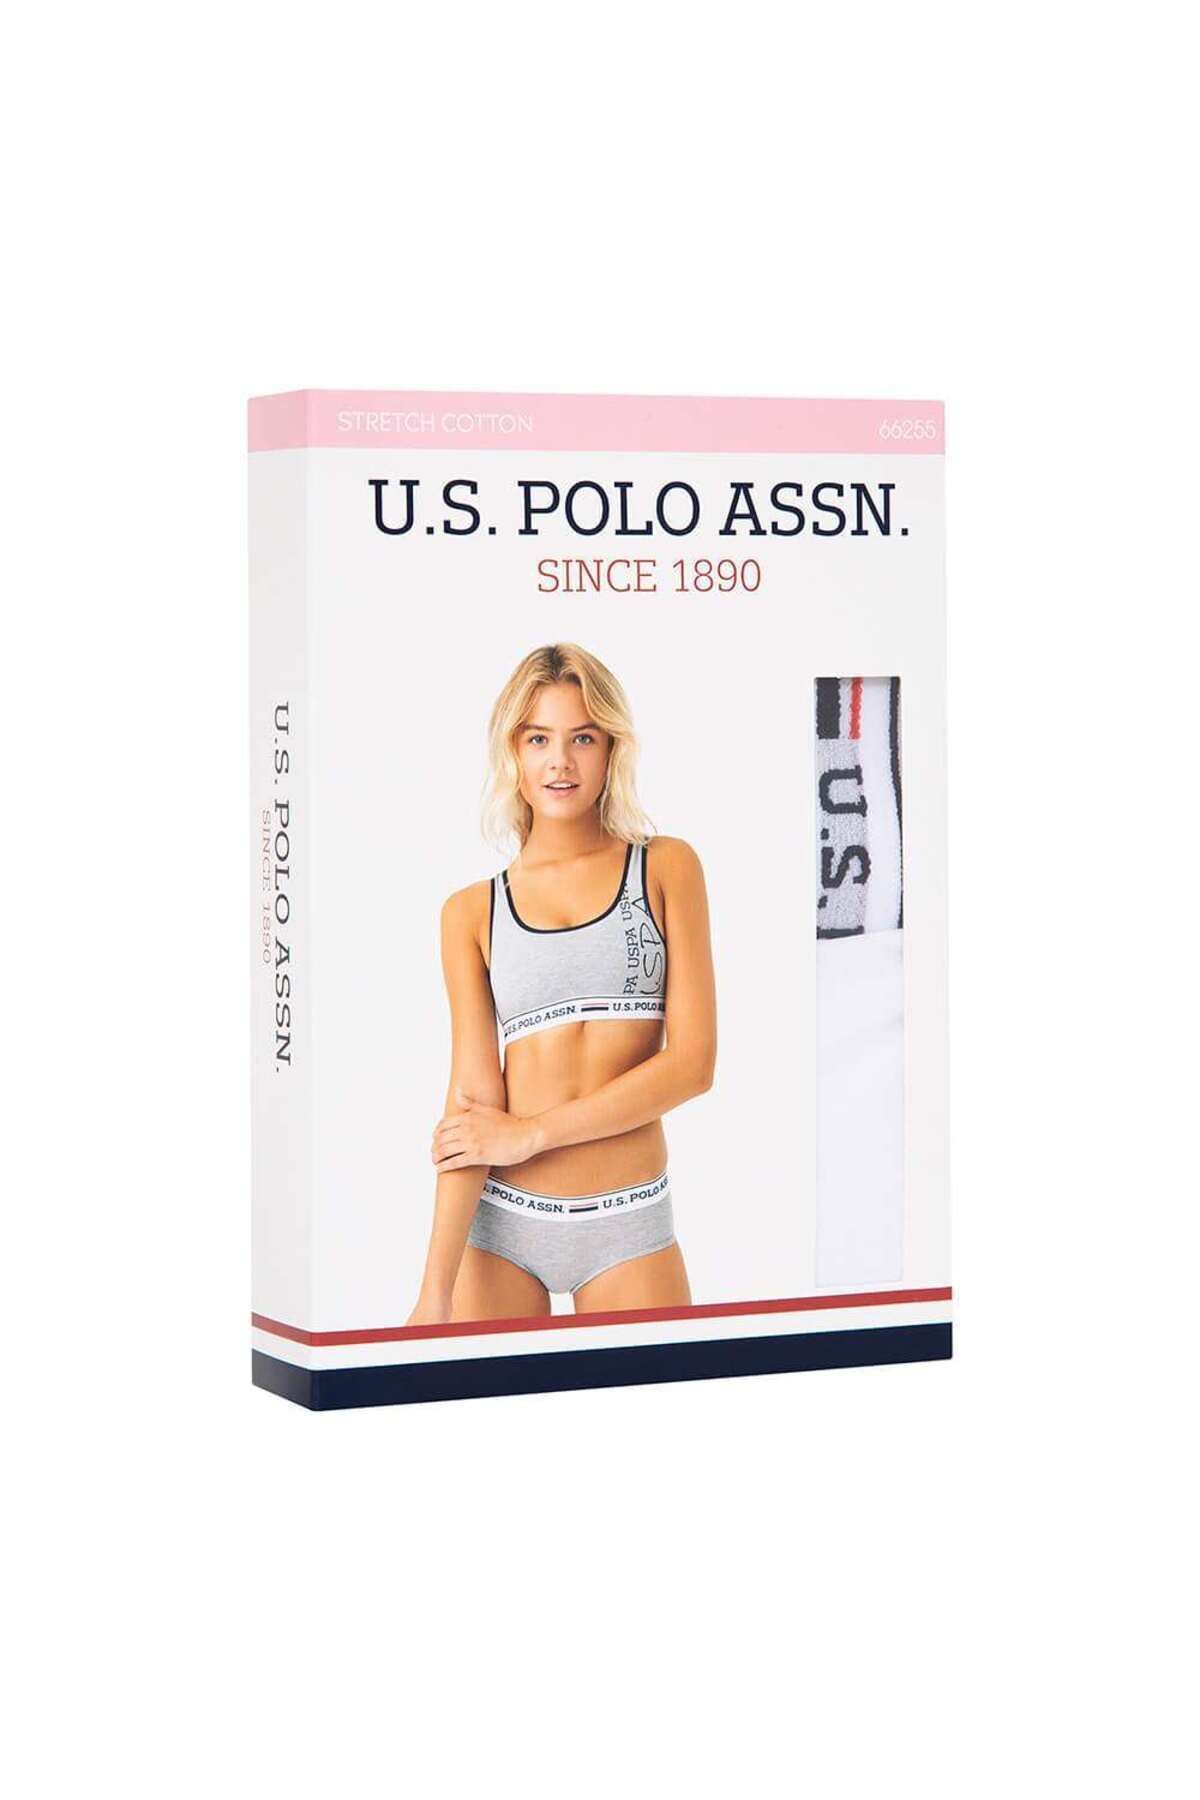 U.S. Polo Assn. - 66255 Büstiyer Şort Takım